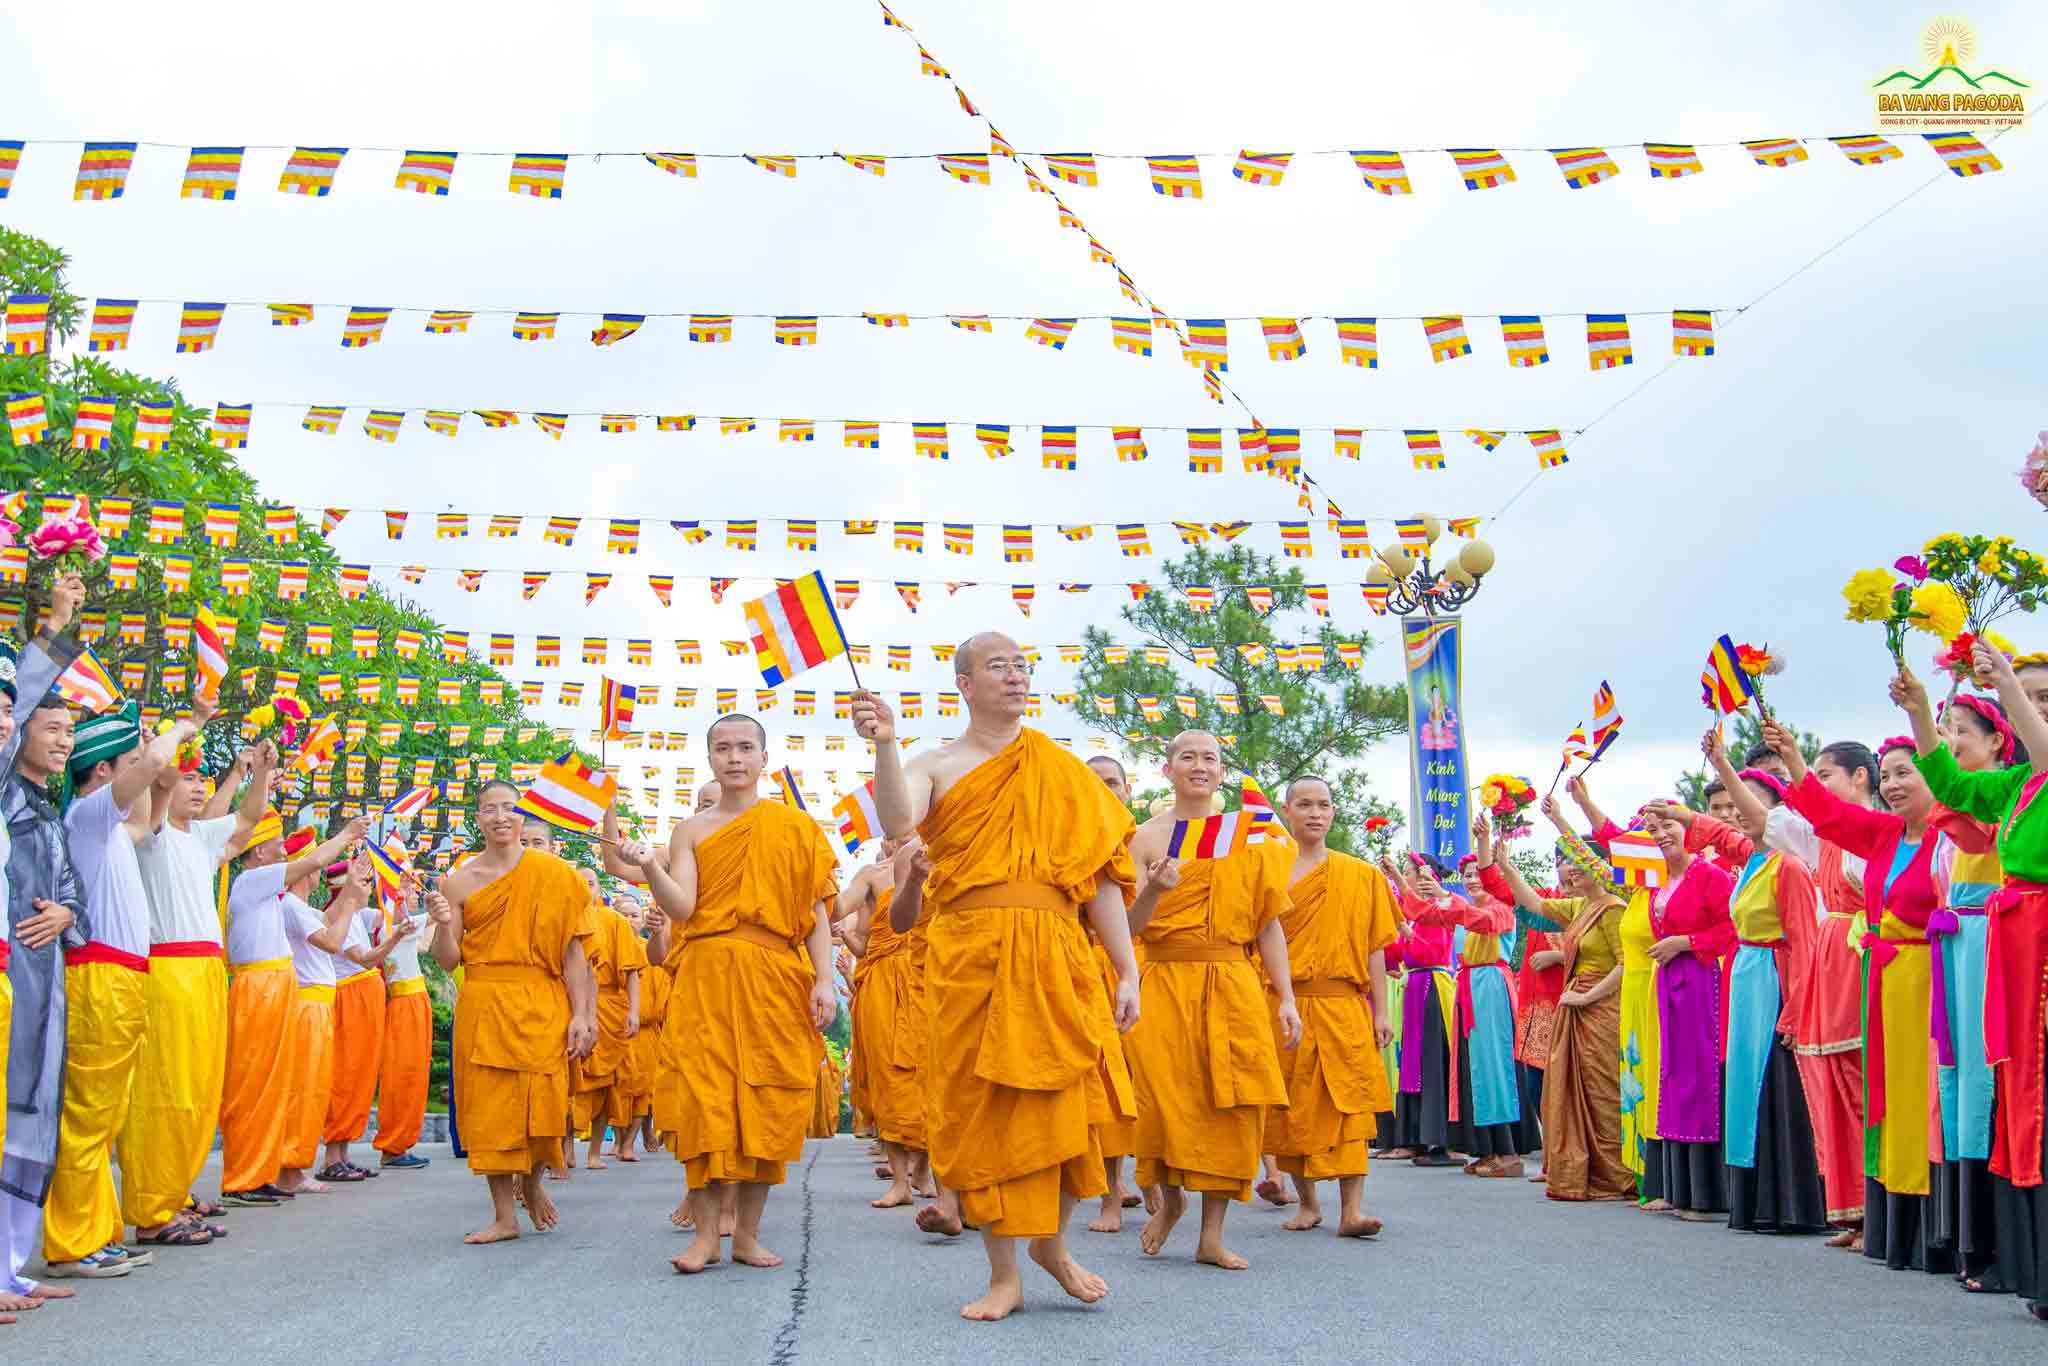 Thay and the Sangha and lay Buddhists happily waving Buddism flag in VESAK celebration 2022 at Ba Vang Pagoda